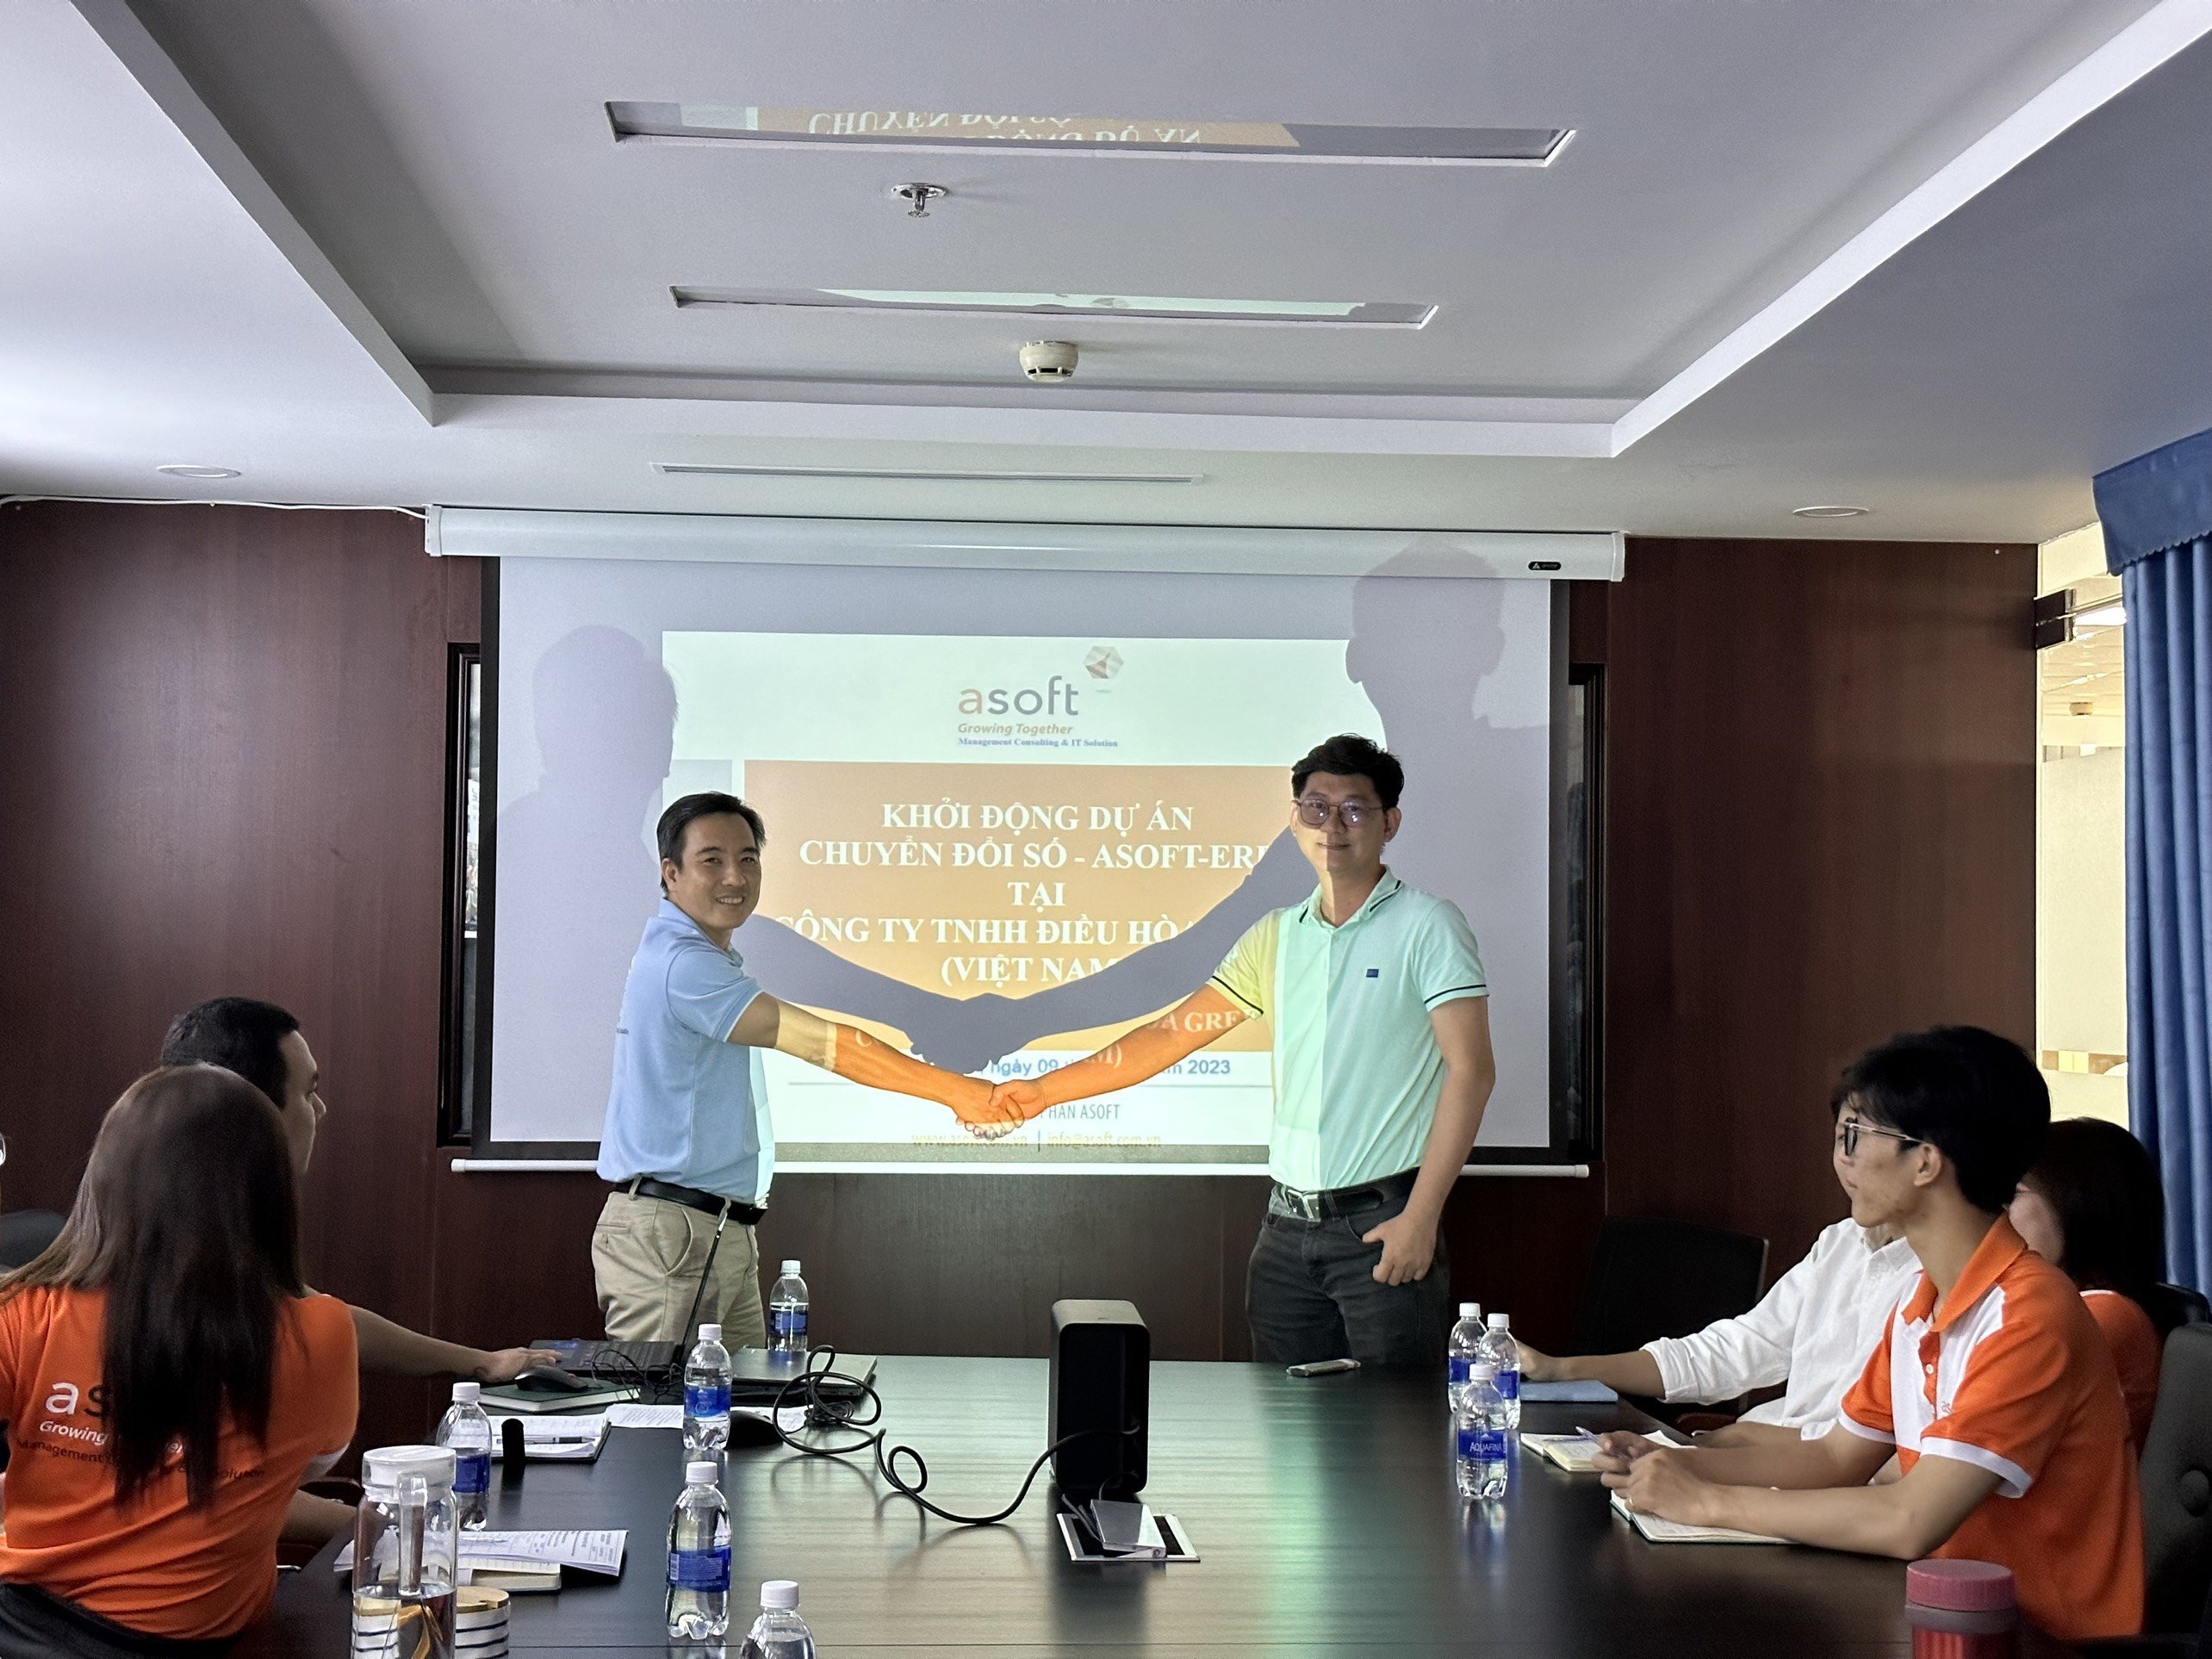 GREE Việt Nam đã “đồng hành” cùng ASOFT khởi động dự án chuyển đổi số với ASOFT-ERP